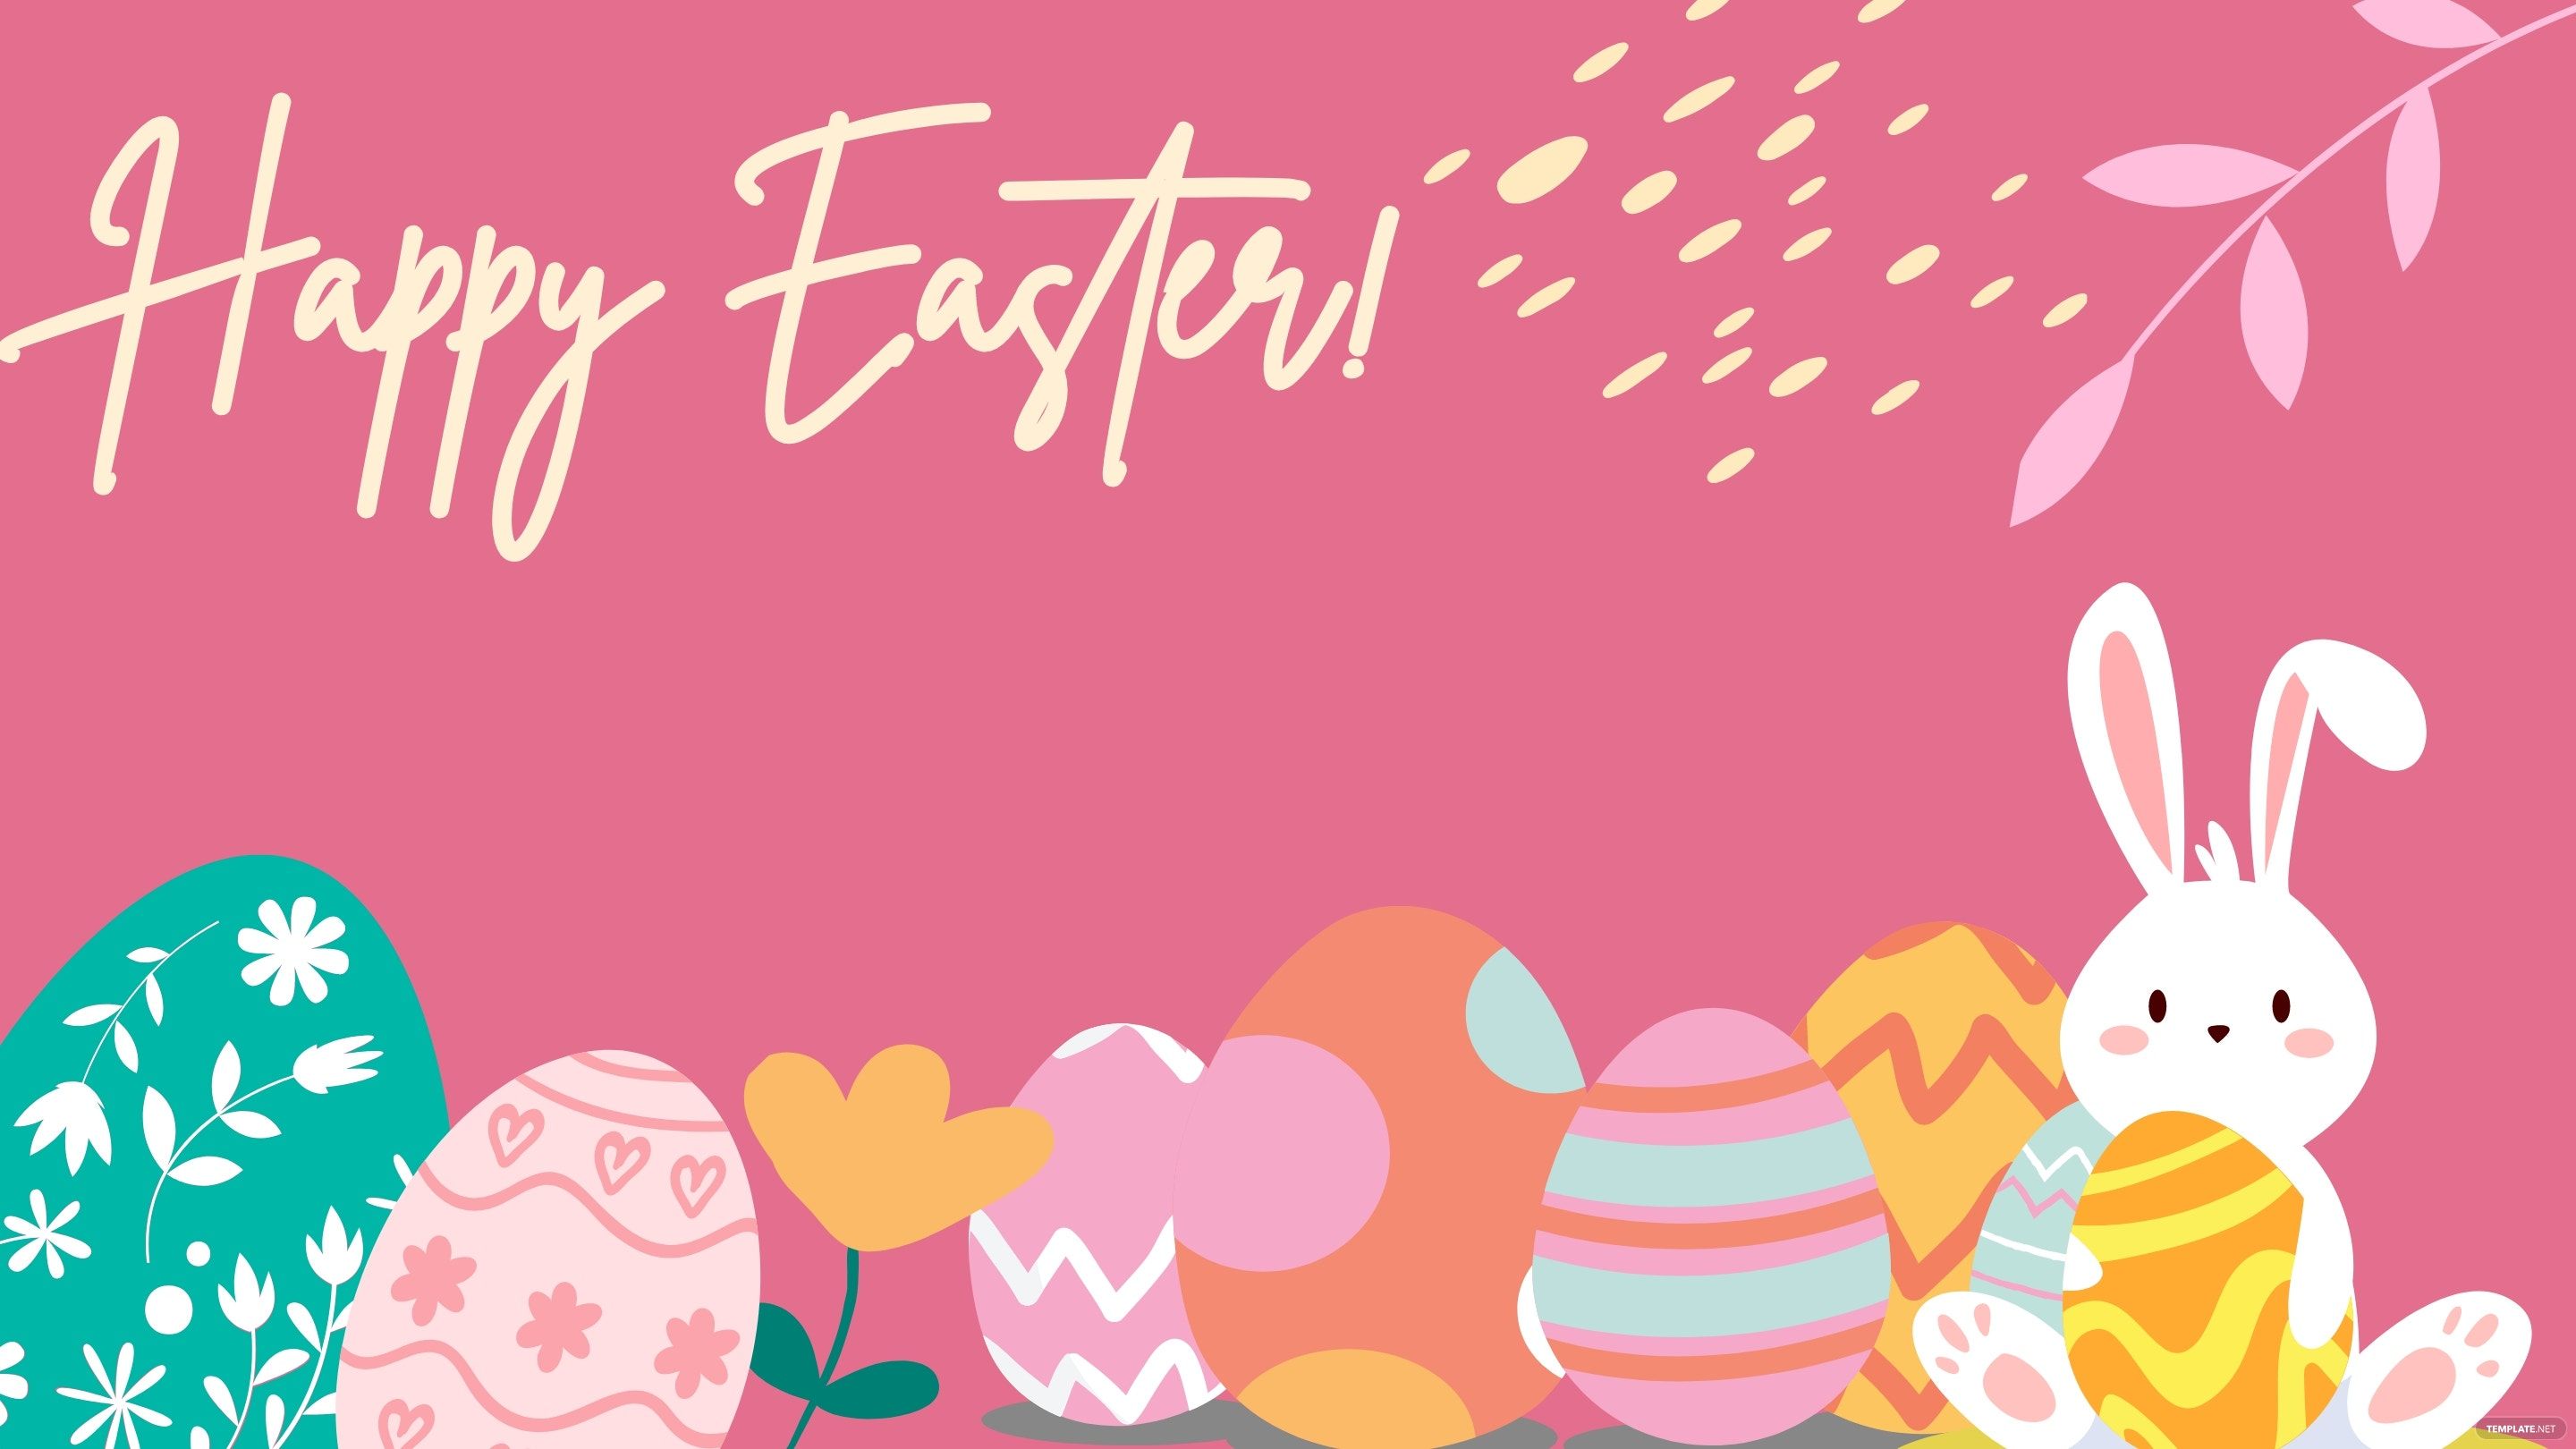 Free Easter Background, Illustrator, JPG, PSD, PNG, PDF, SVG